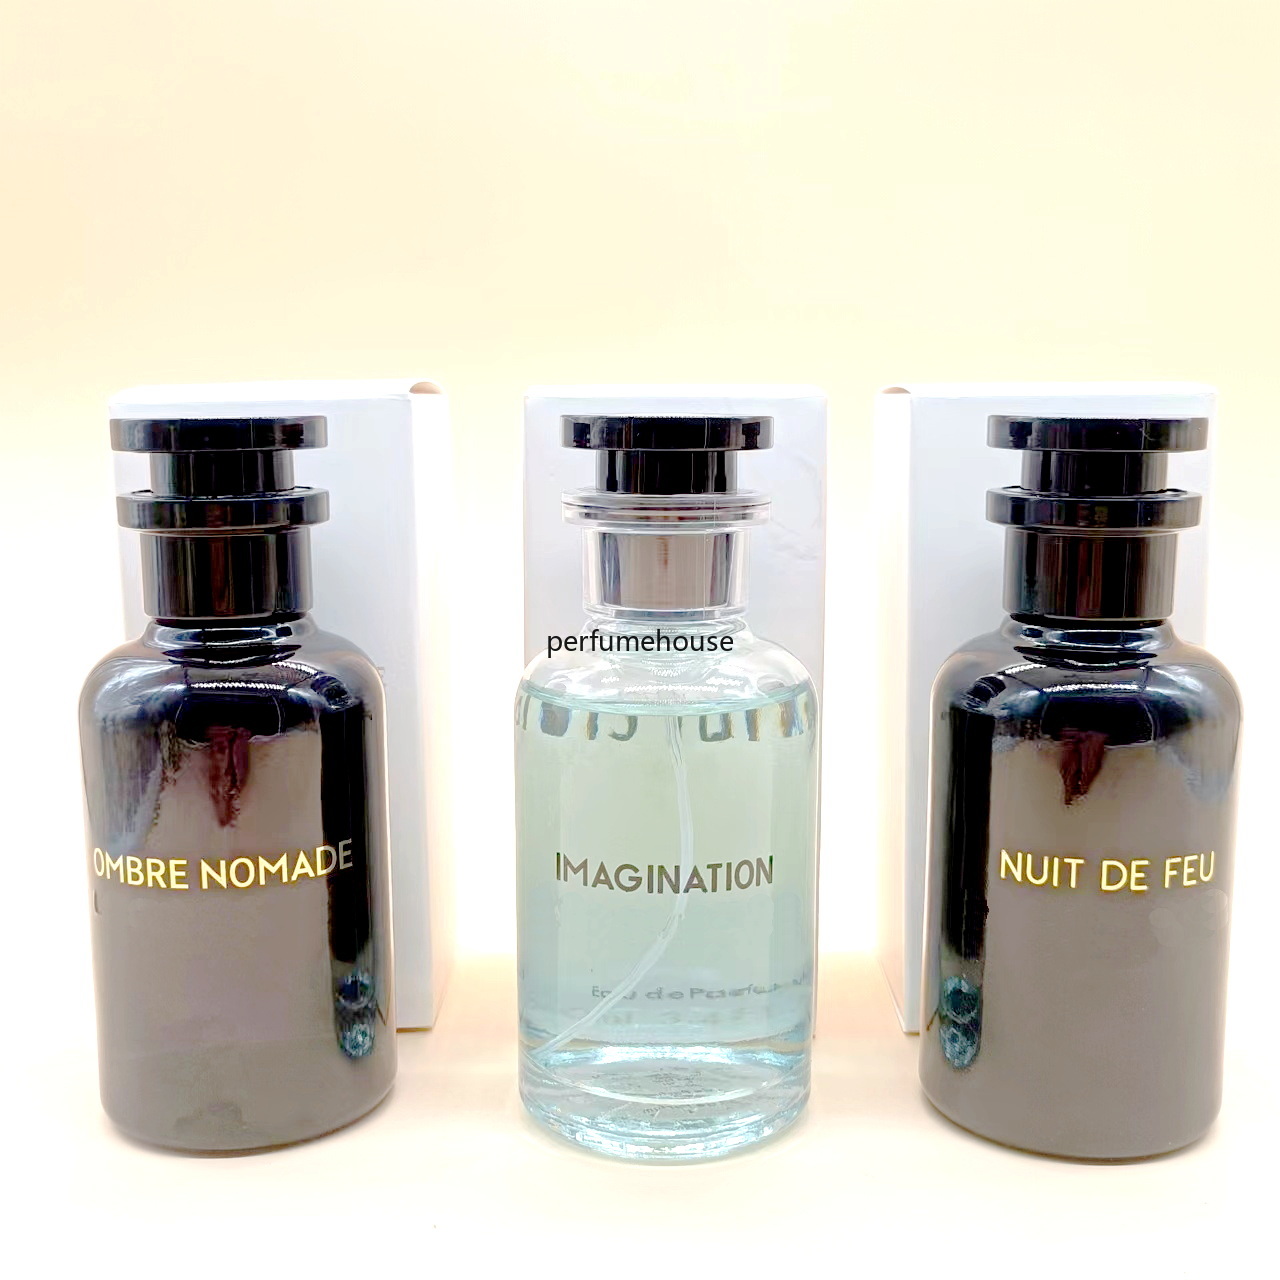 Бренд парфюм Ombre nomade nuit de feu воображение аромат 100 мл мужского пола и женщины Parfum EDP длительный спейт.